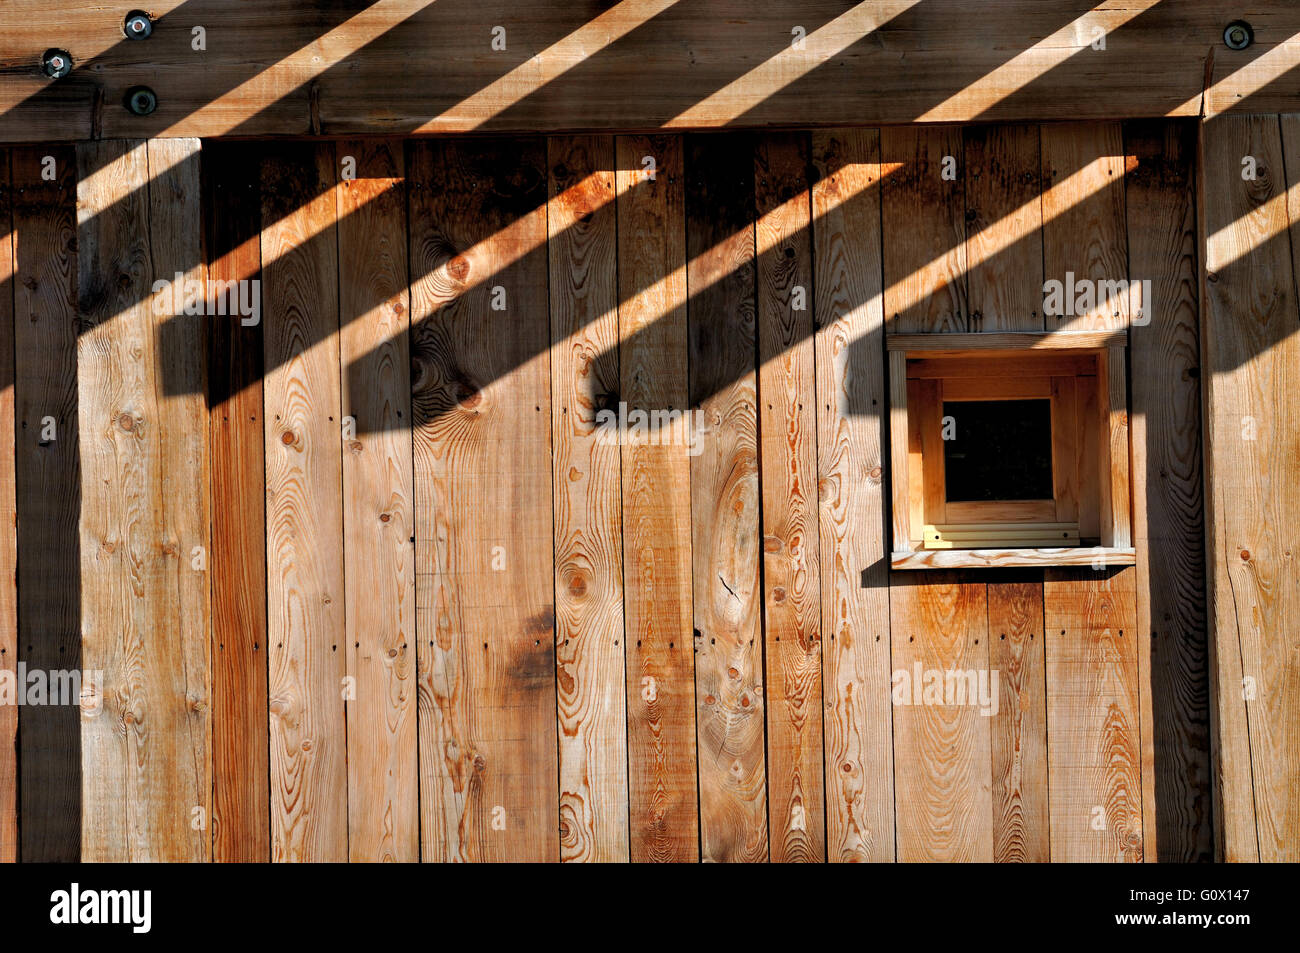 Sombras en una fachada de una cabaña de madera Foto de stock